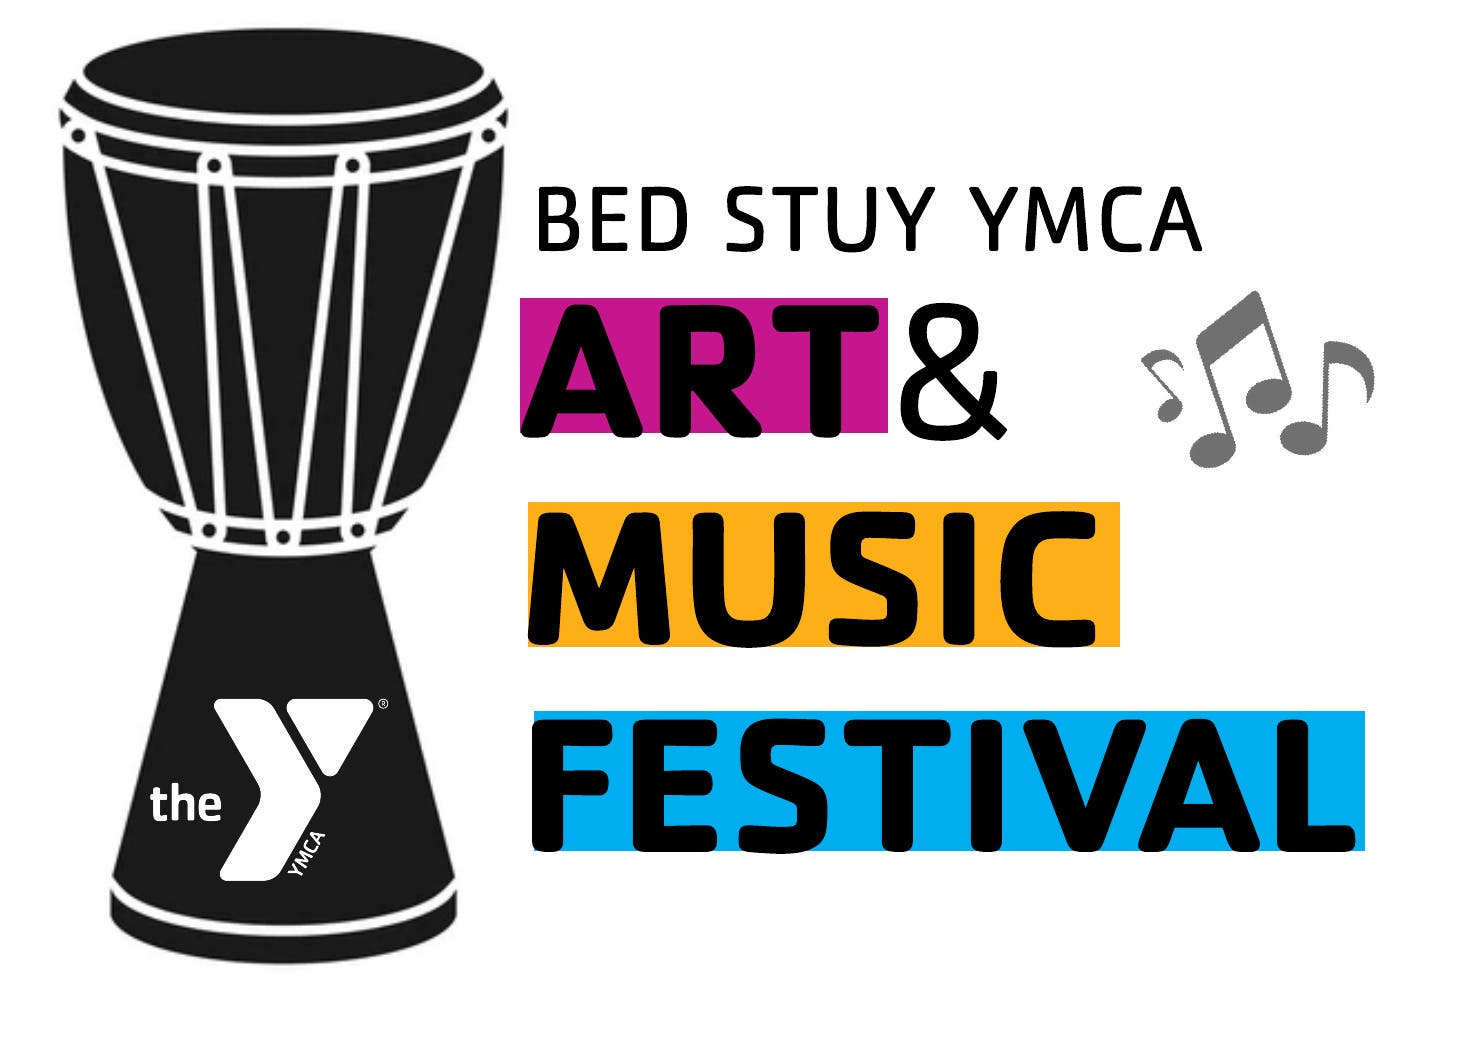 Bed Stuy YMCA Art & Music Festival